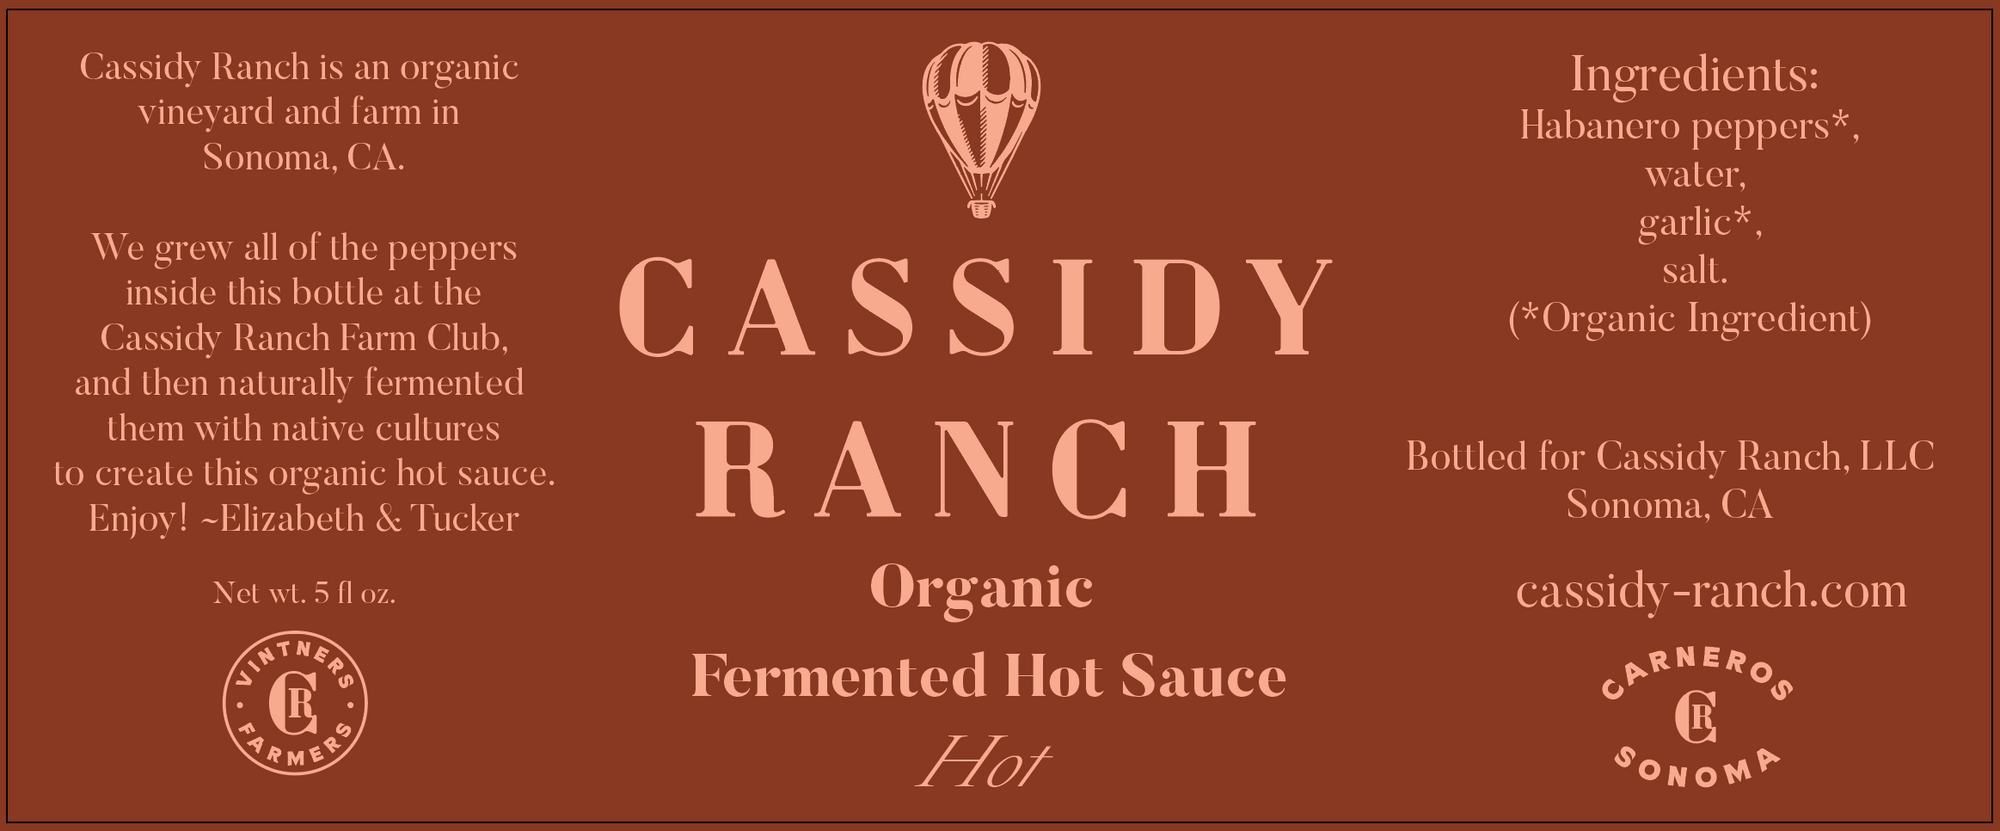 Hot Organic Fermented Hot Sauce